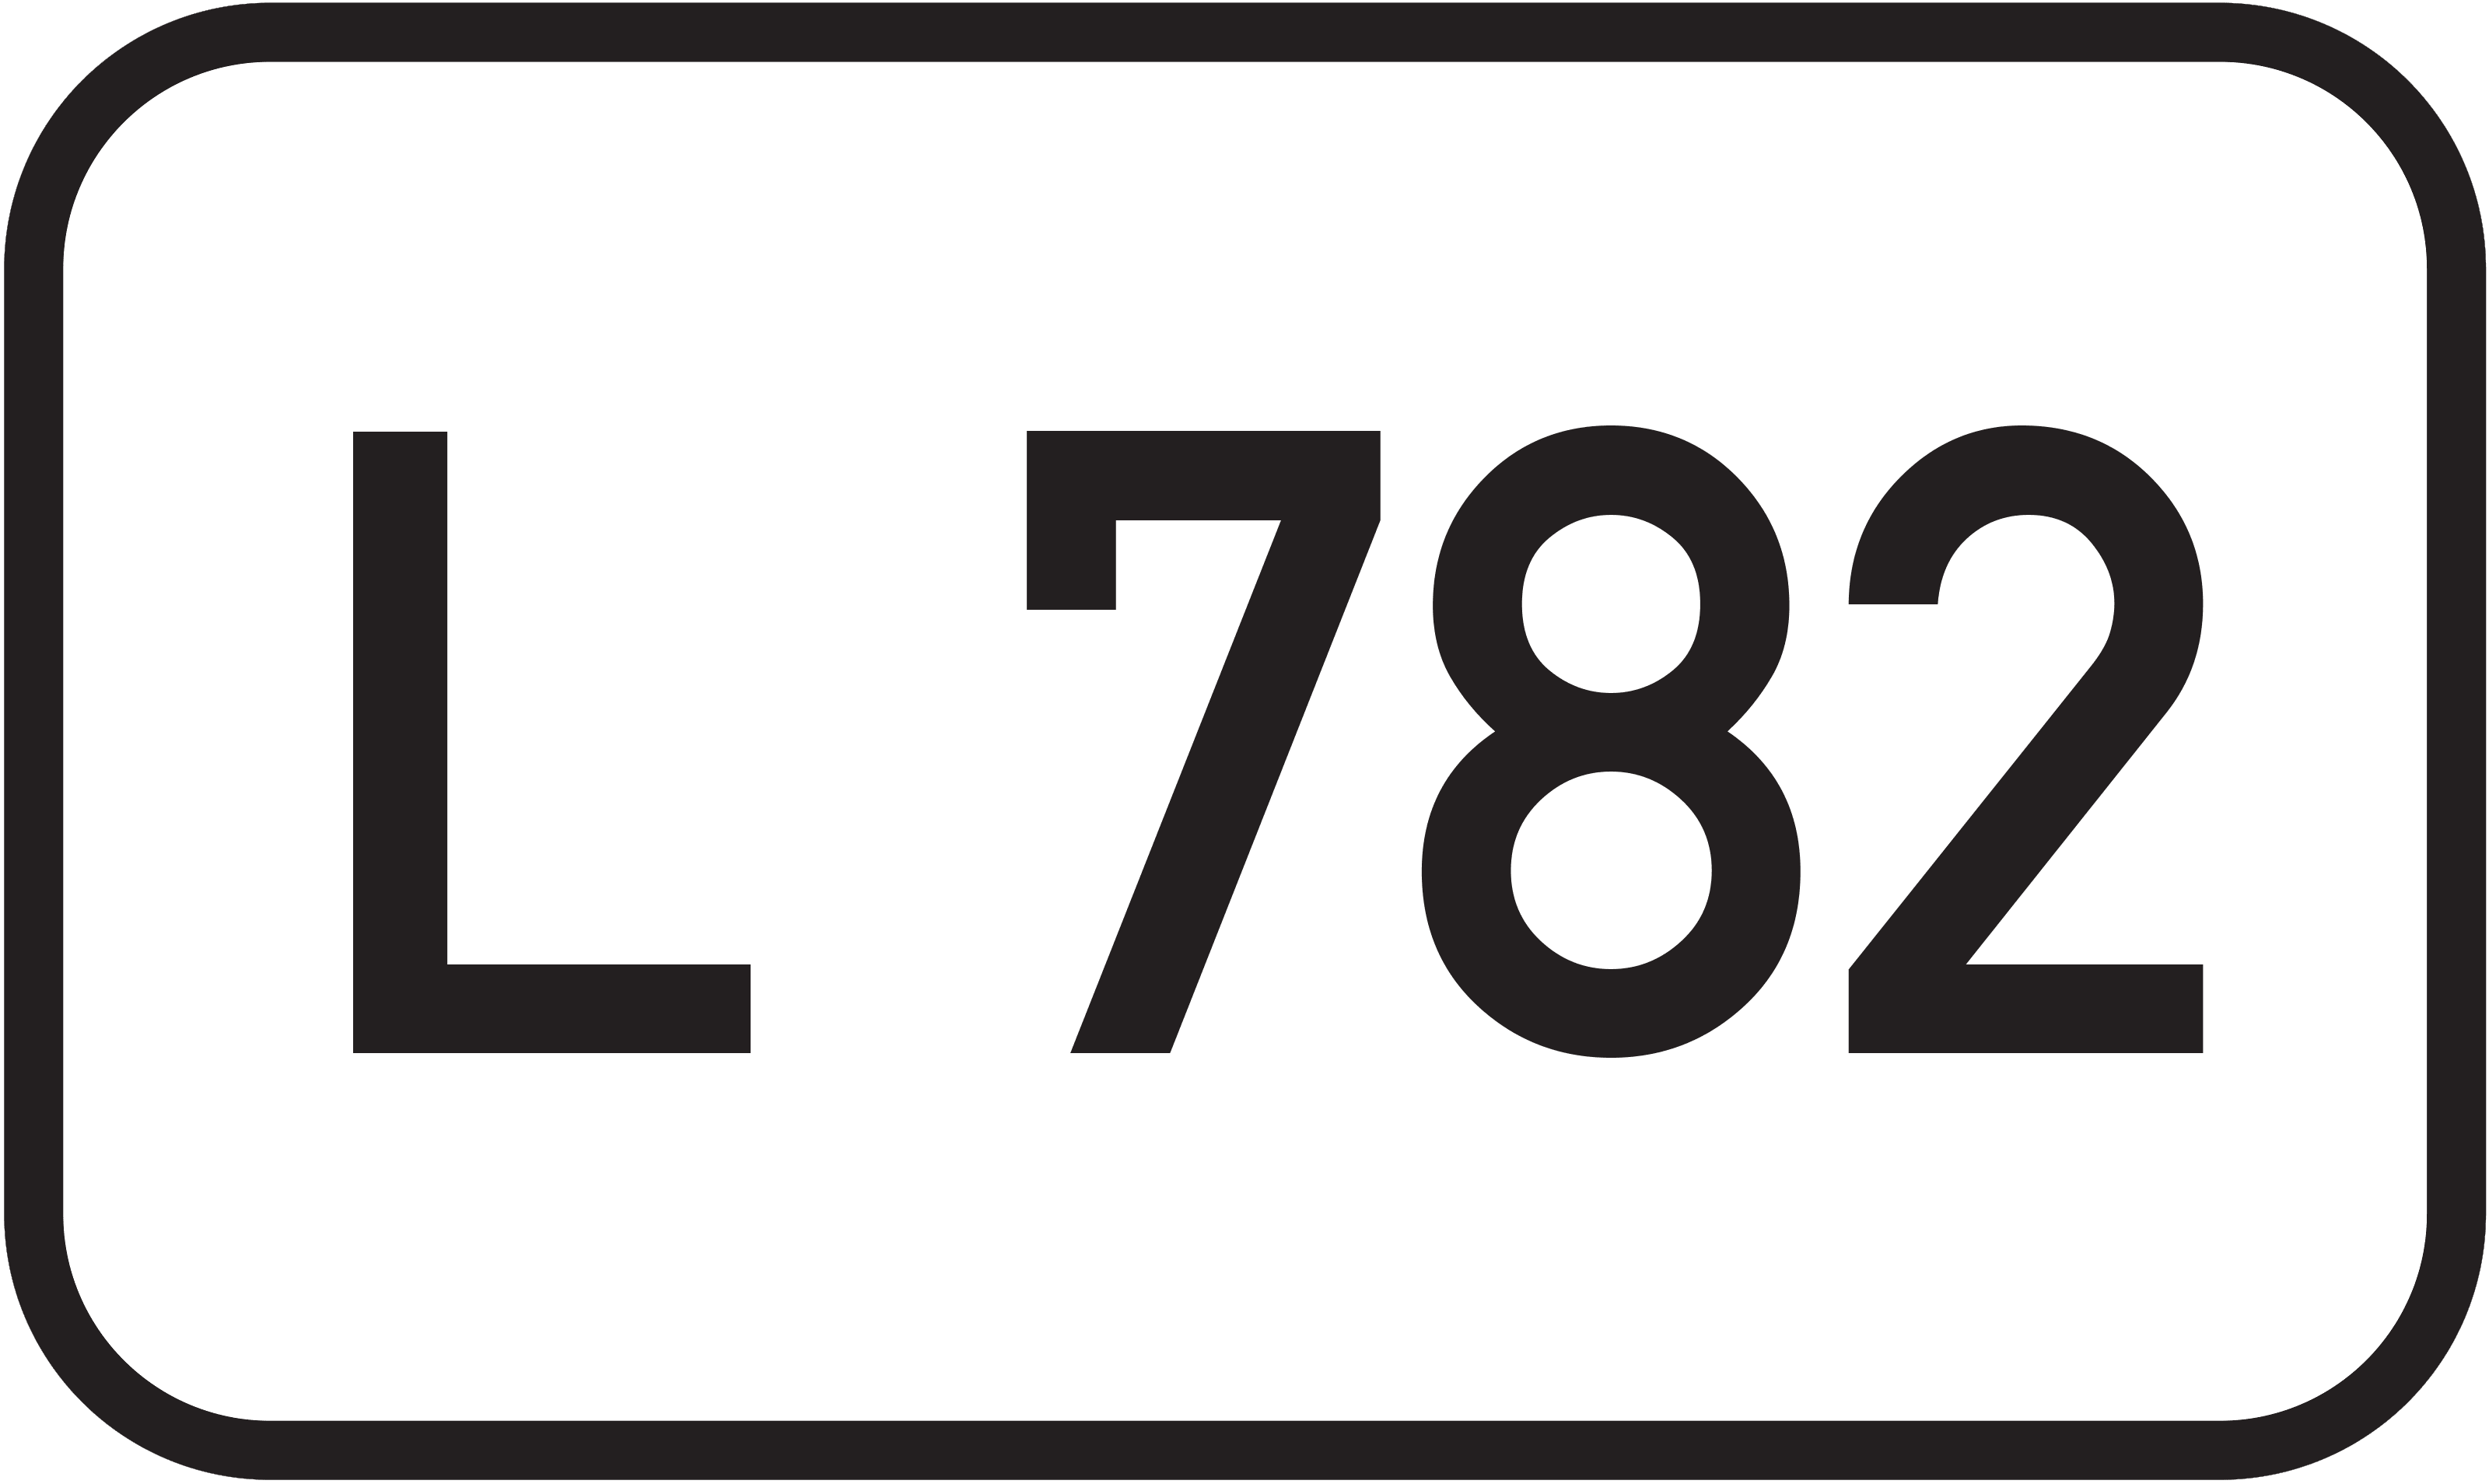 Landesstraße L 782